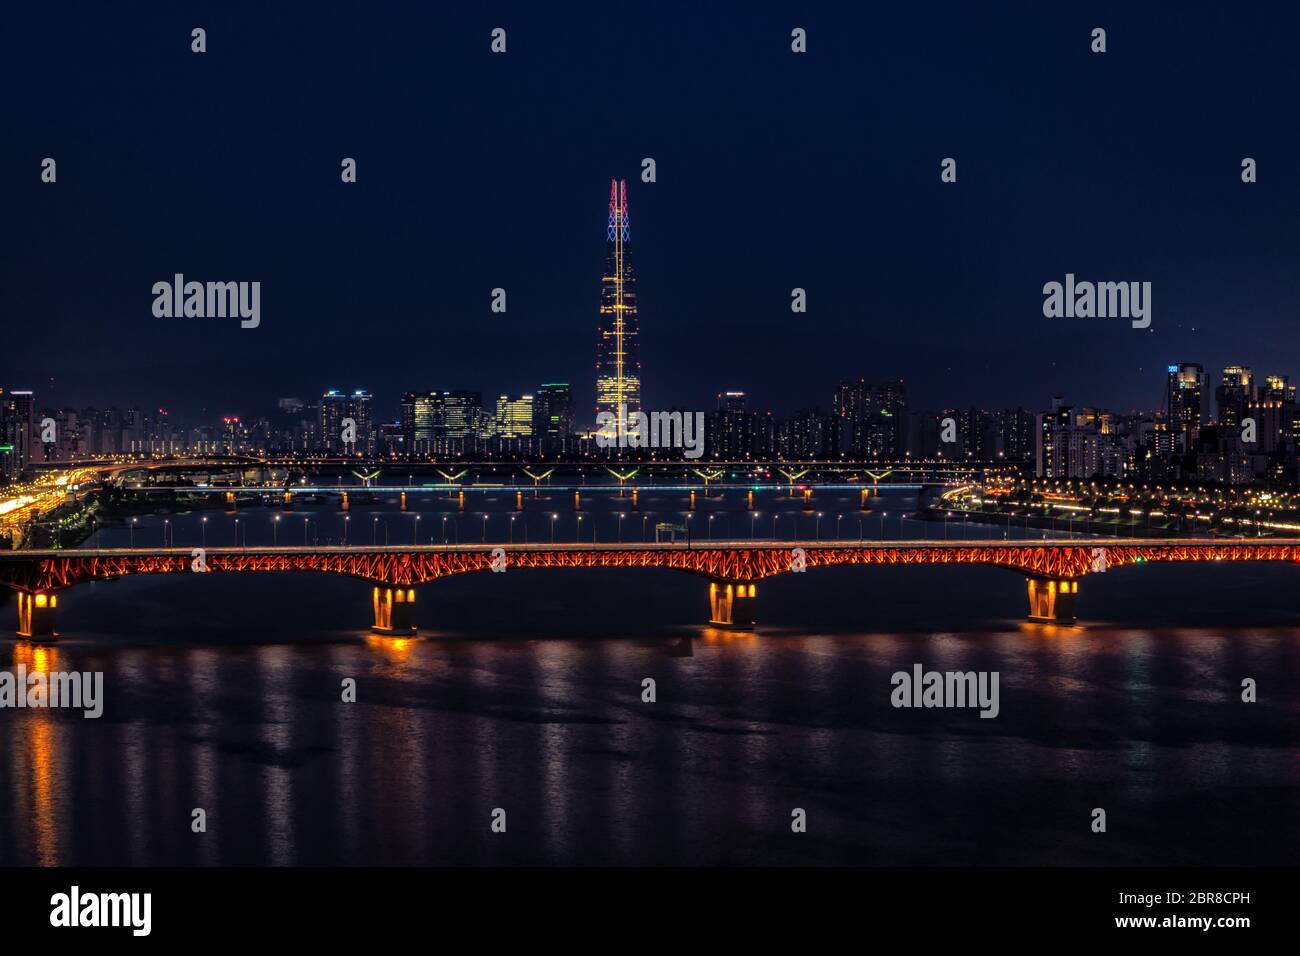 Lotte Tower And Seungsu Bridge Lit Up Taken At Night The Of